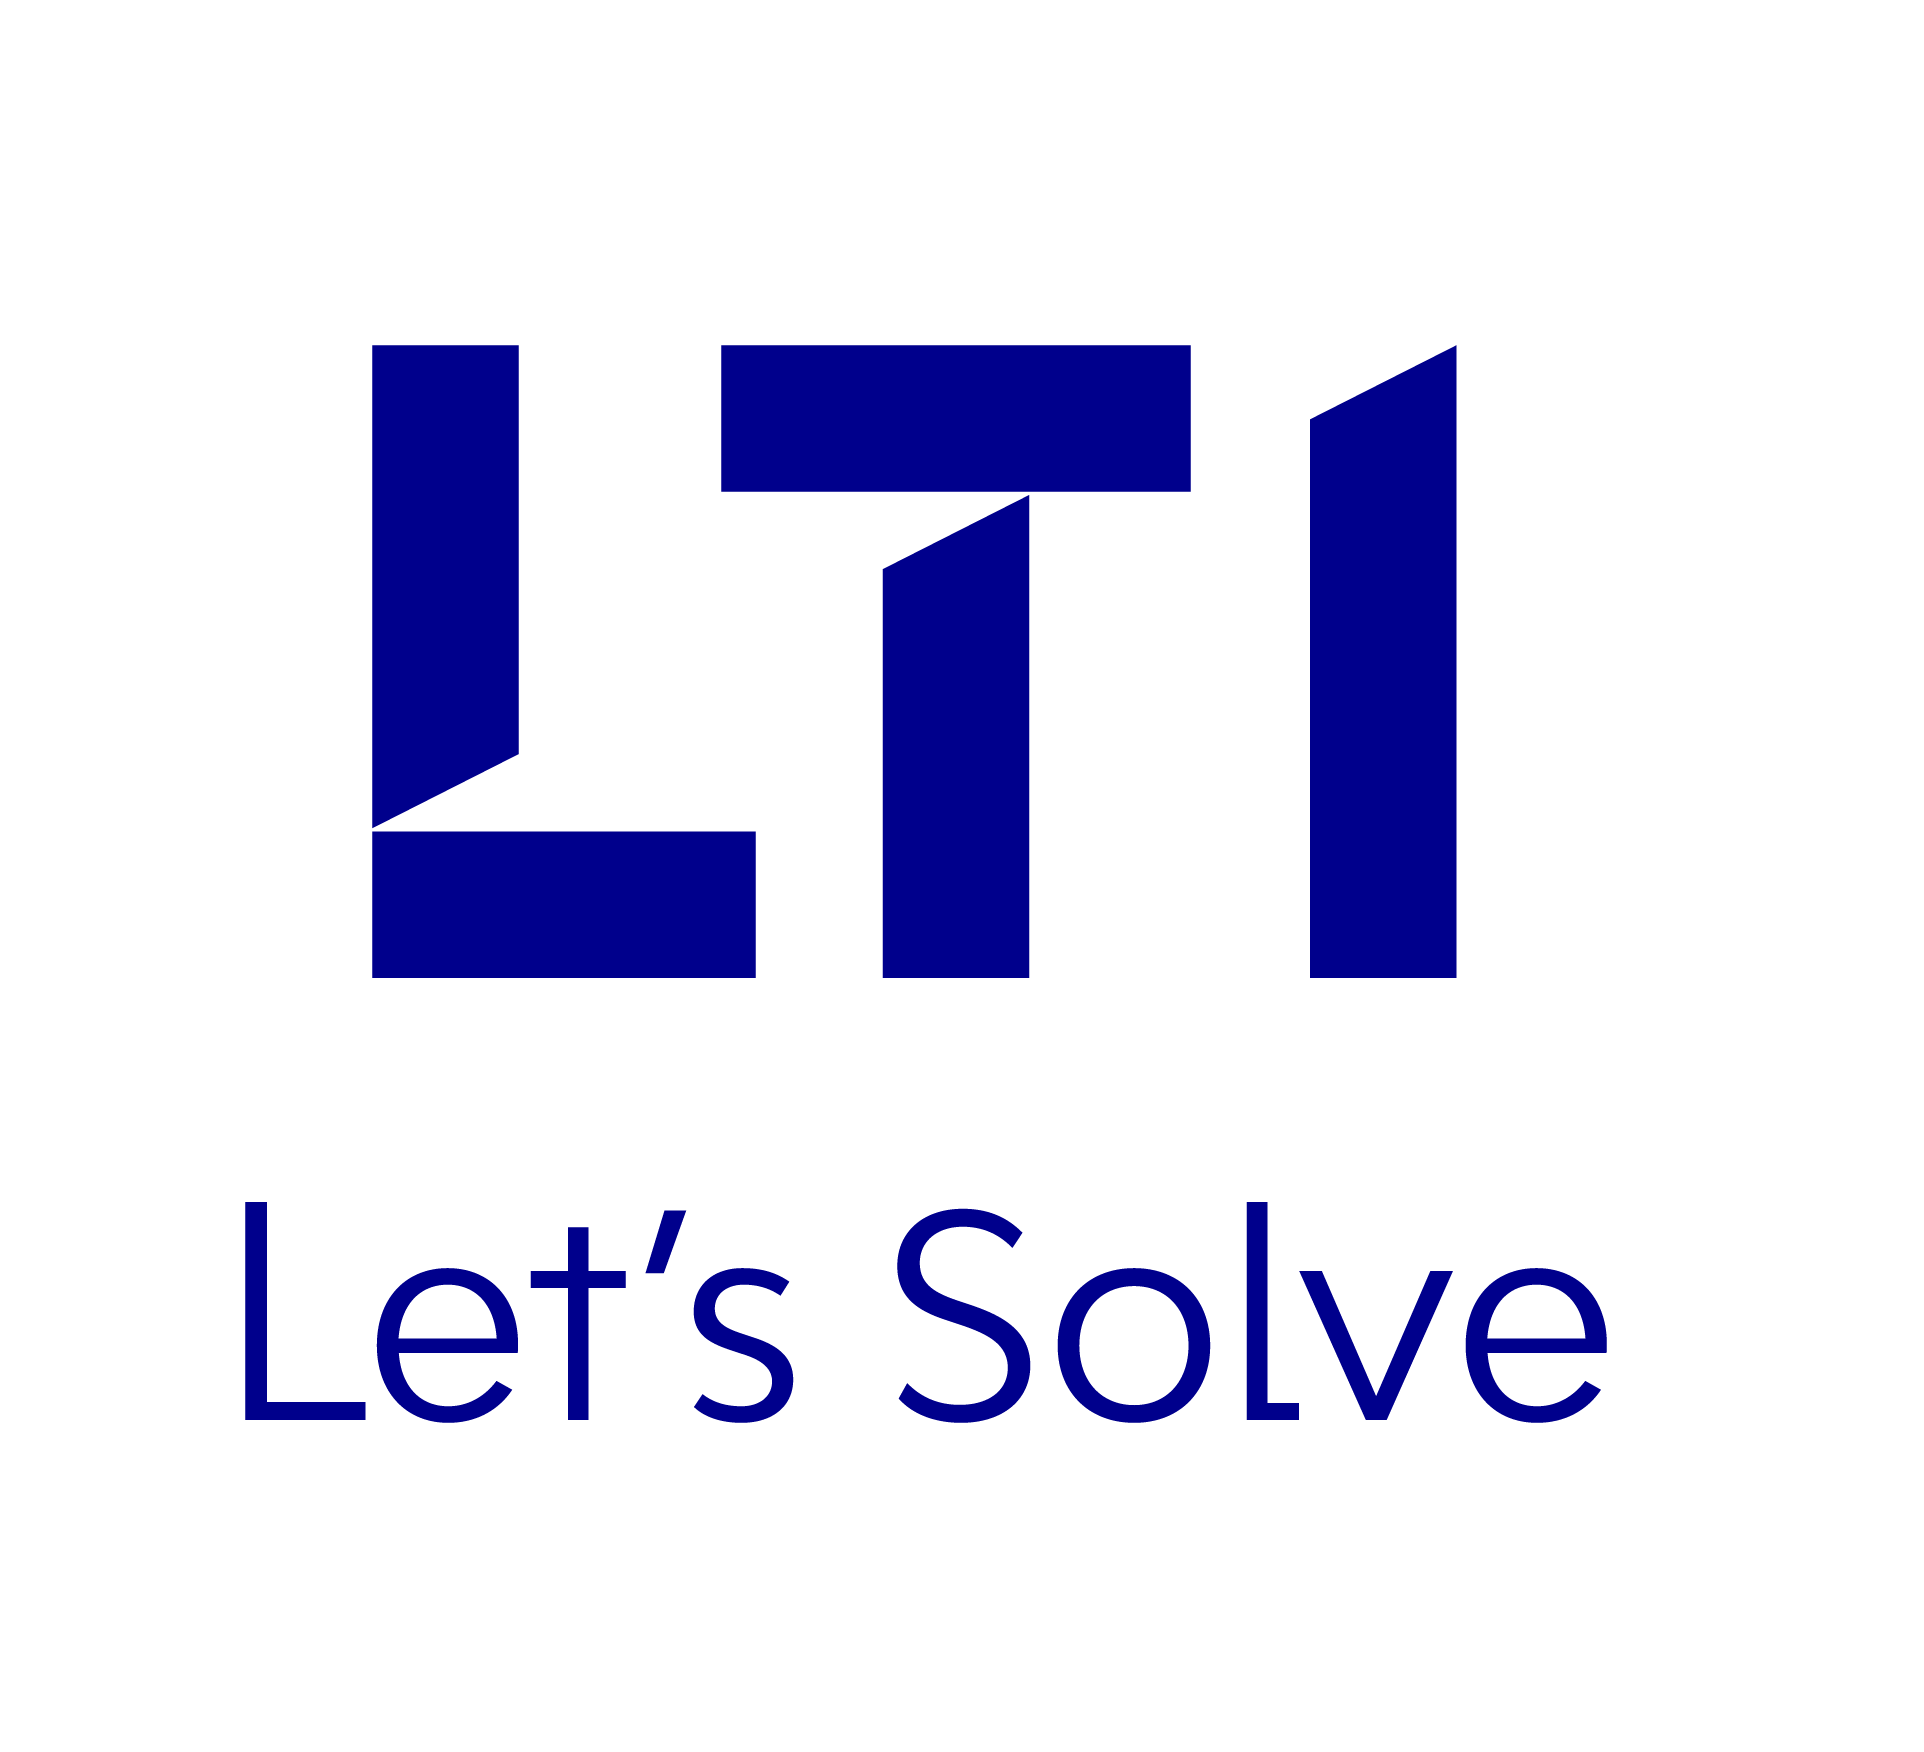 LTI Lets solve logo png